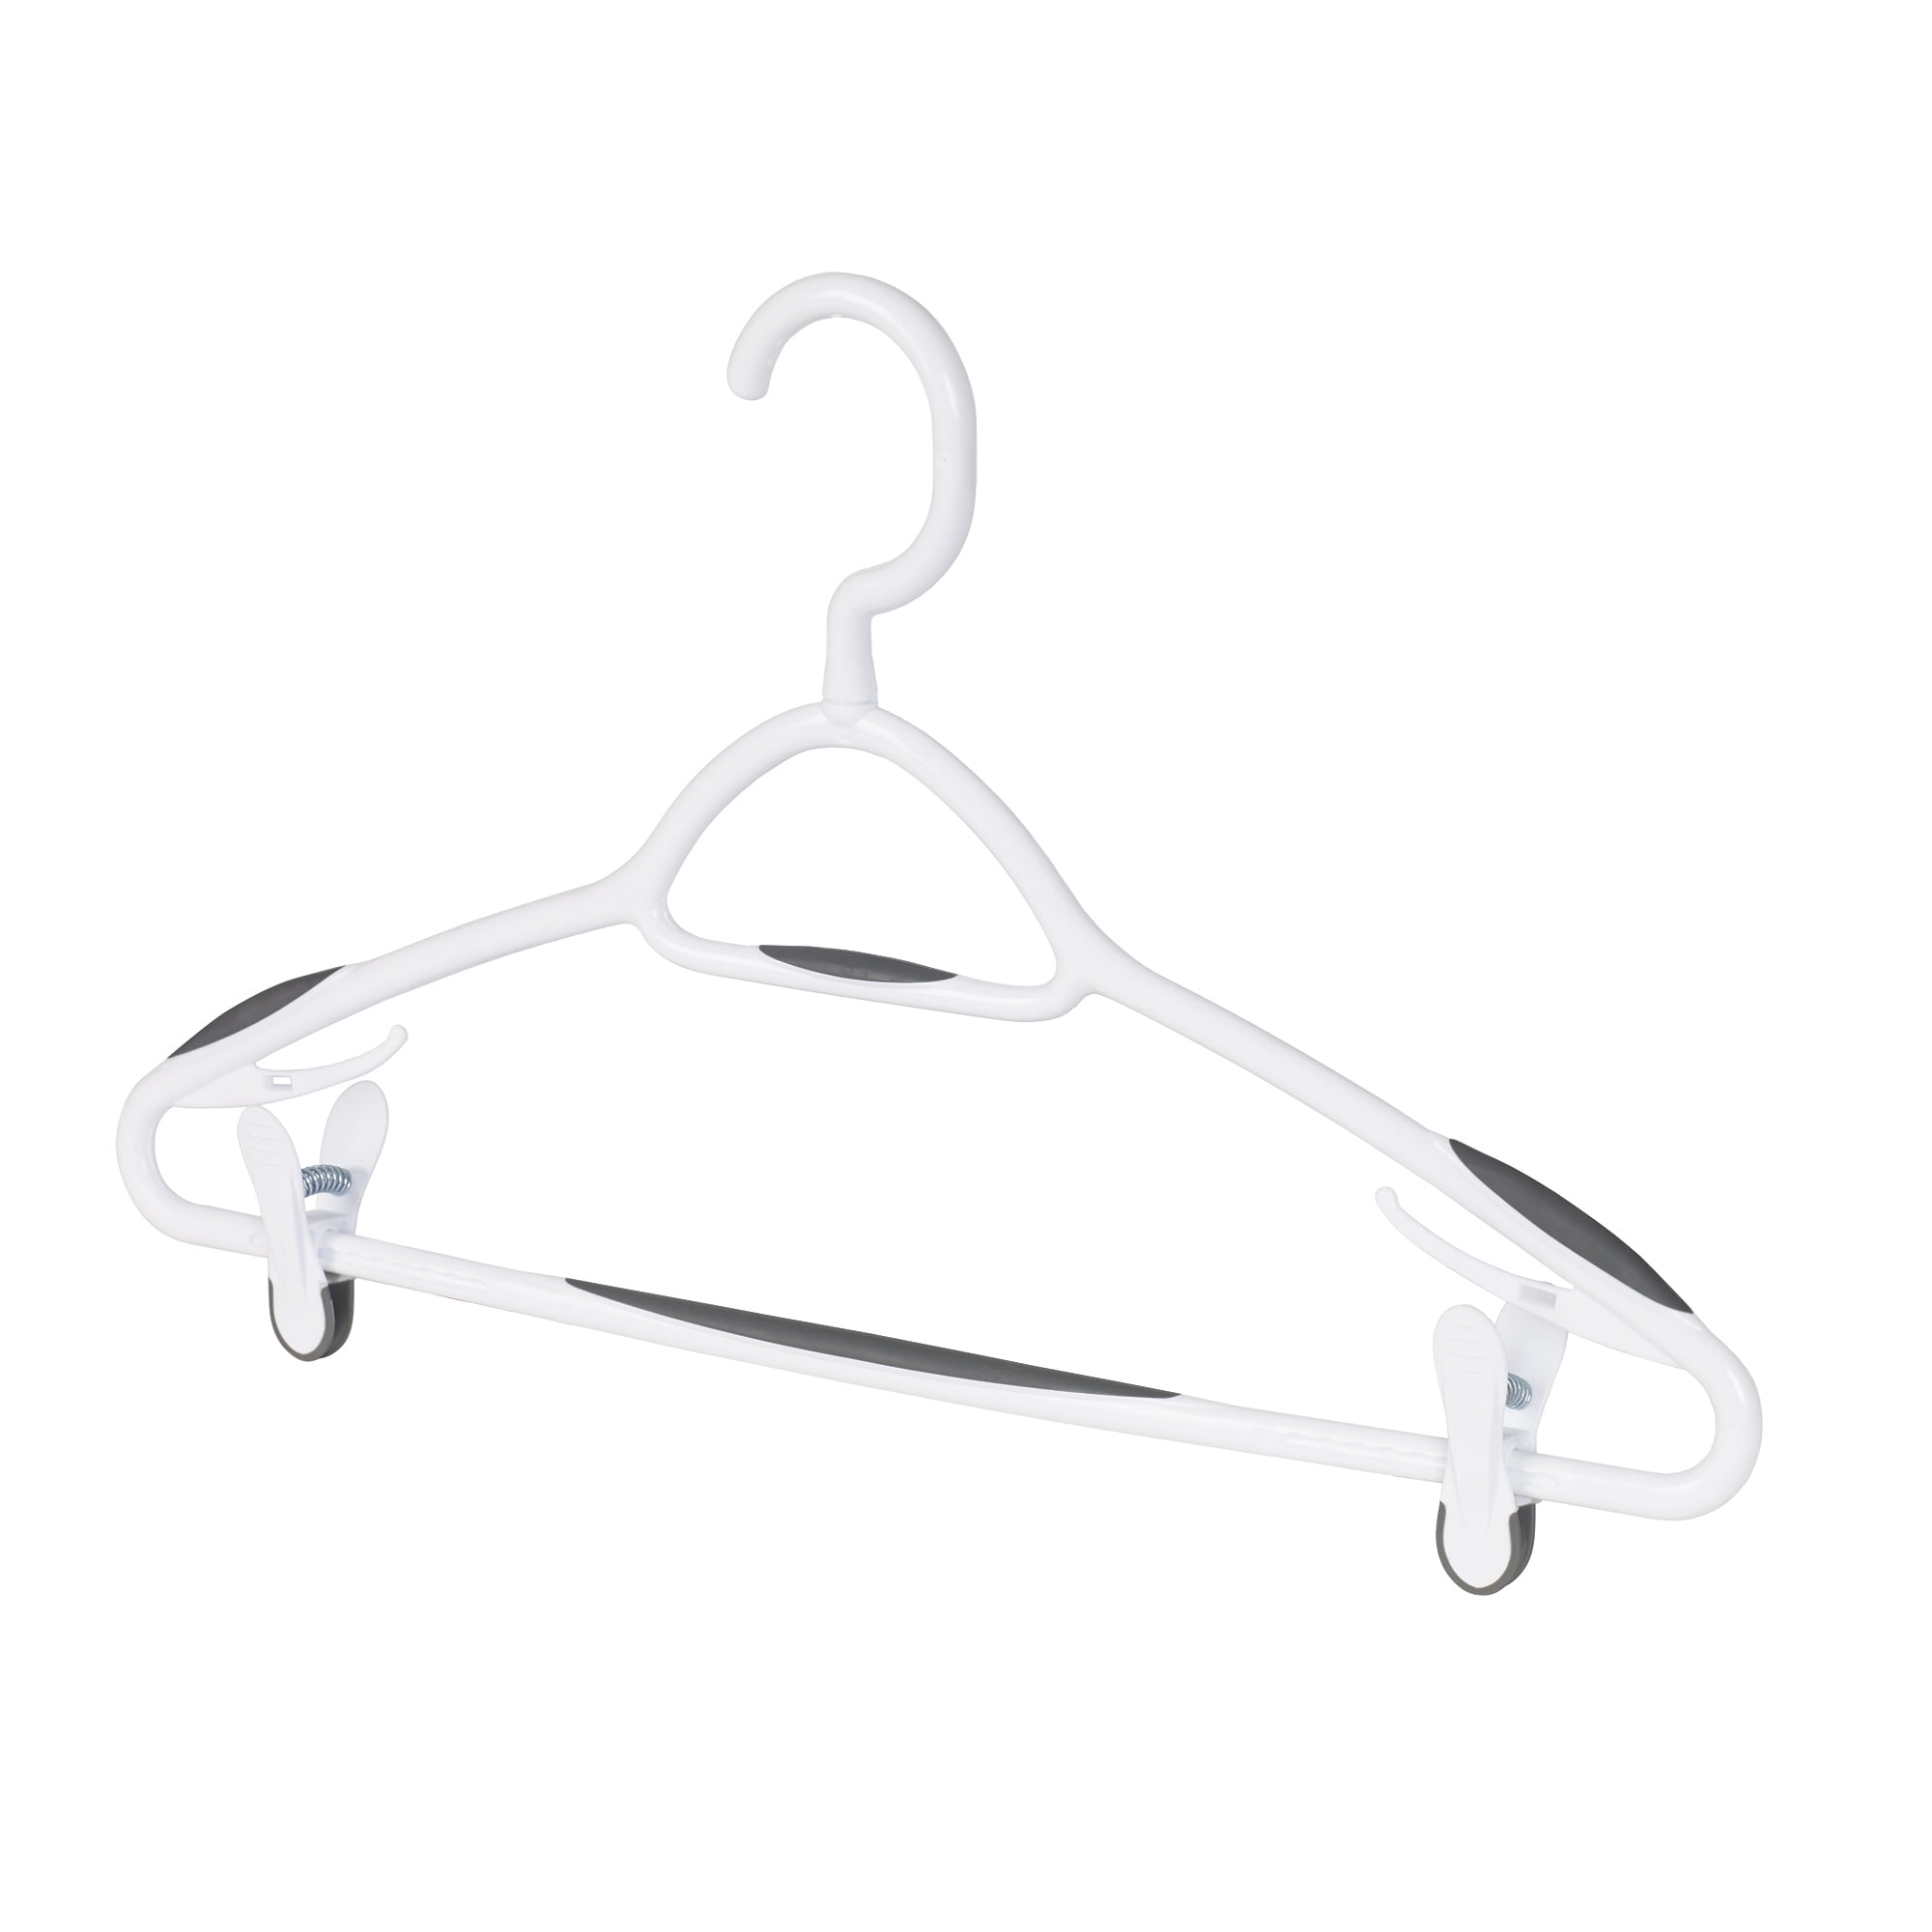 neatfreak 24-Pack Plastic Clothing Hanger (White) at